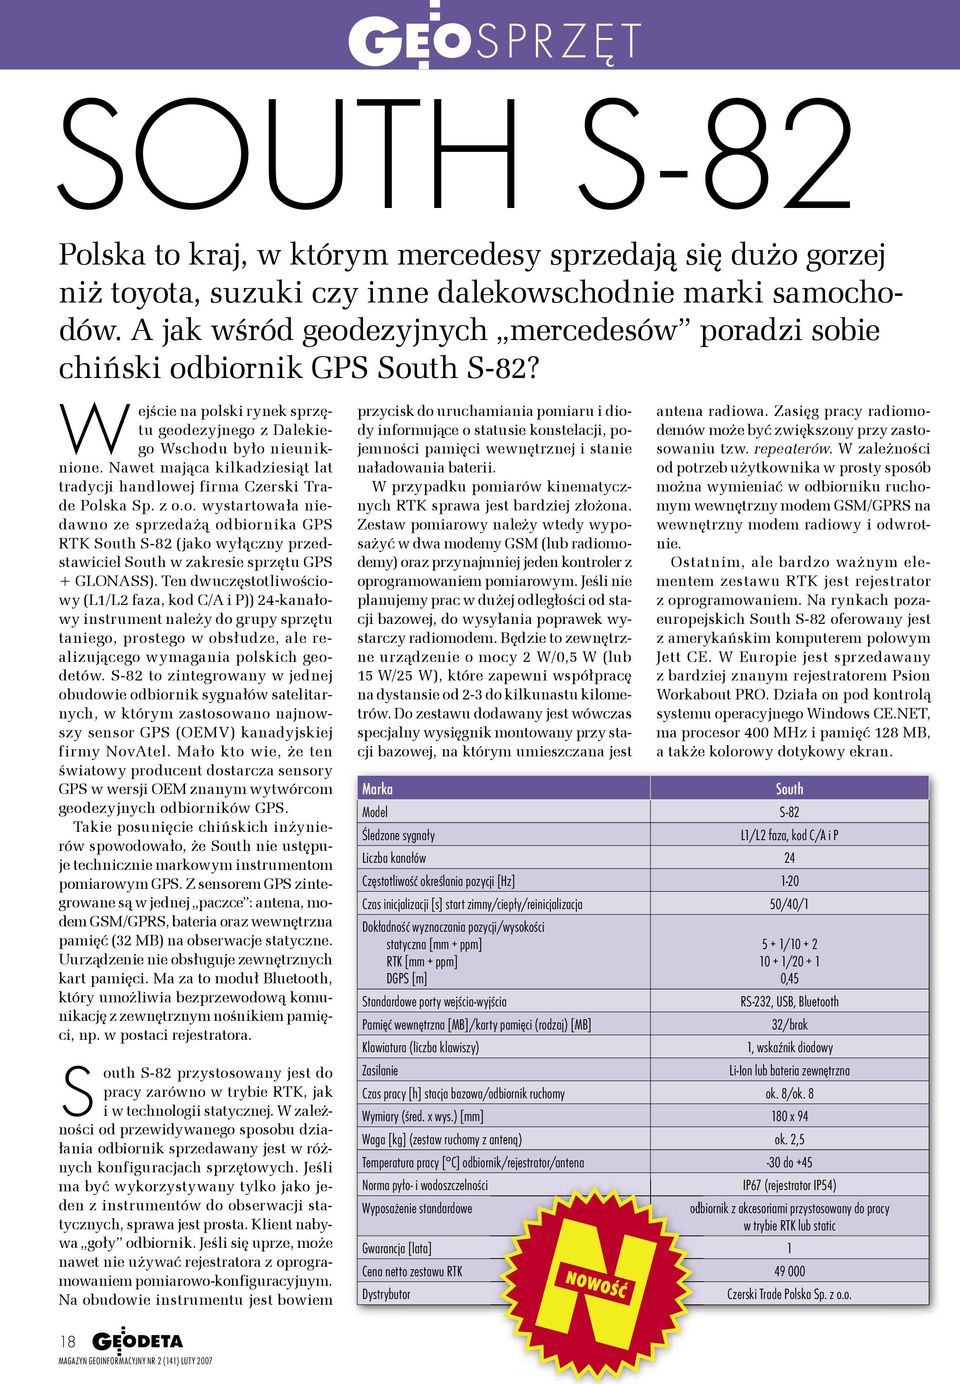 Nawet mająca kilkadziesiąt lat tradycji handlowej firma Czerski Trade Polska Sp. z o.o. wystartowała niedawno ze sprzedażą odbiornika GPS RTK South S-82 (jako wyłączny przedstawiciel South w zakresie sprzętu GPS + GLONASS).